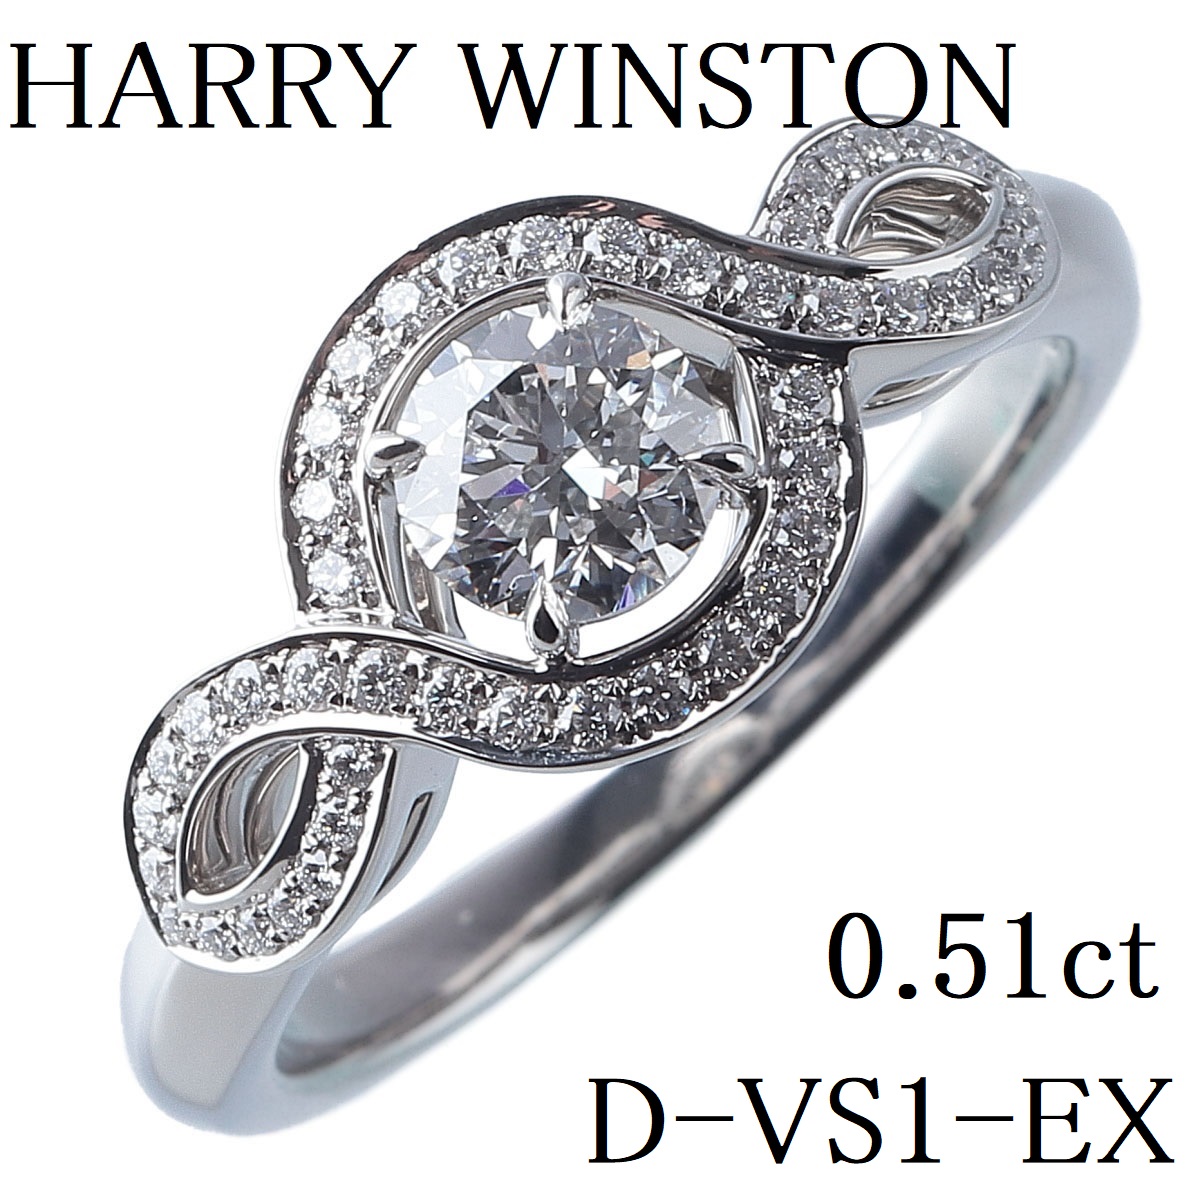 高級品市場 リリークラスター WINSTON HARRY 婚約指輪 ダイヤ